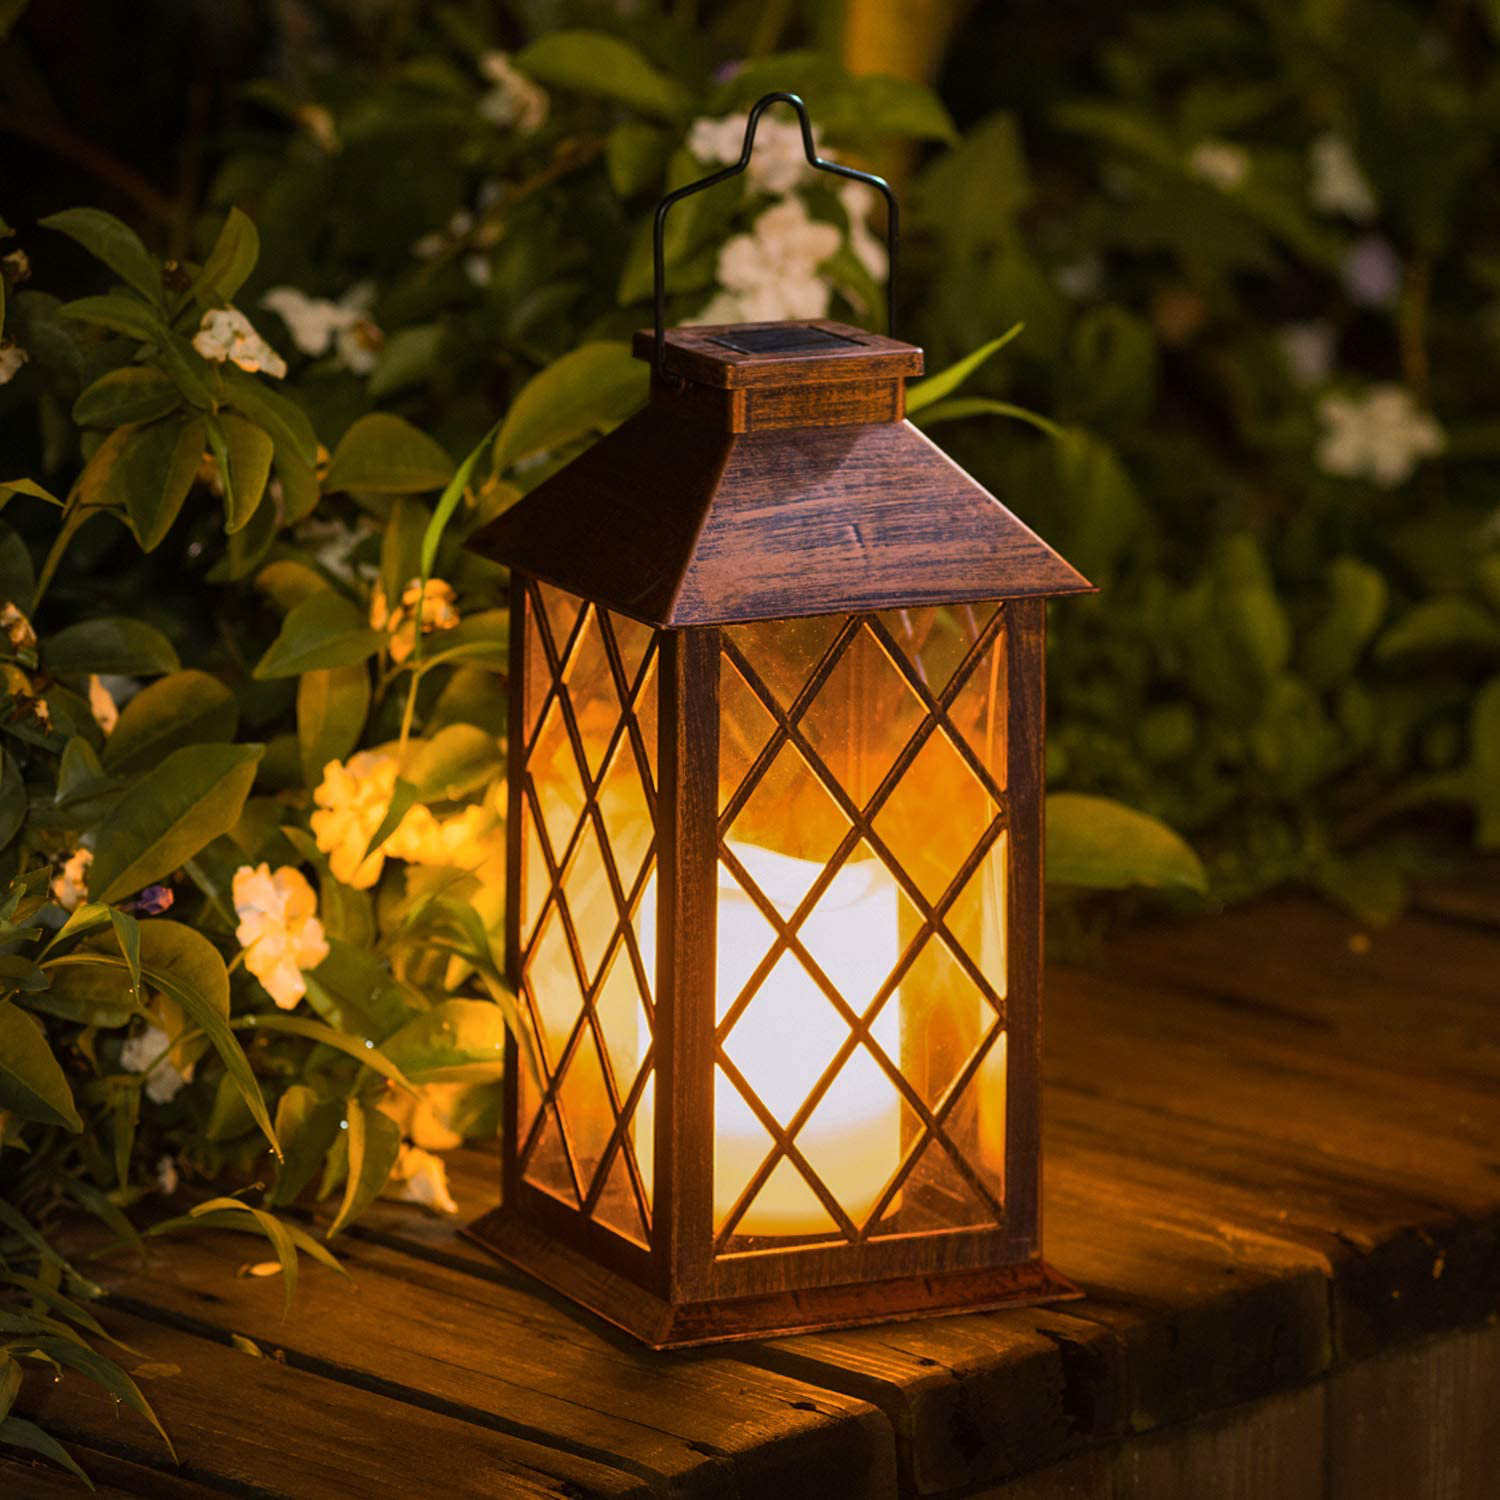 https://assets.wfcdn.com/im/78836115/compr-r85/2223/222334379/11-battery-powered-outdoor-lantern.jpg